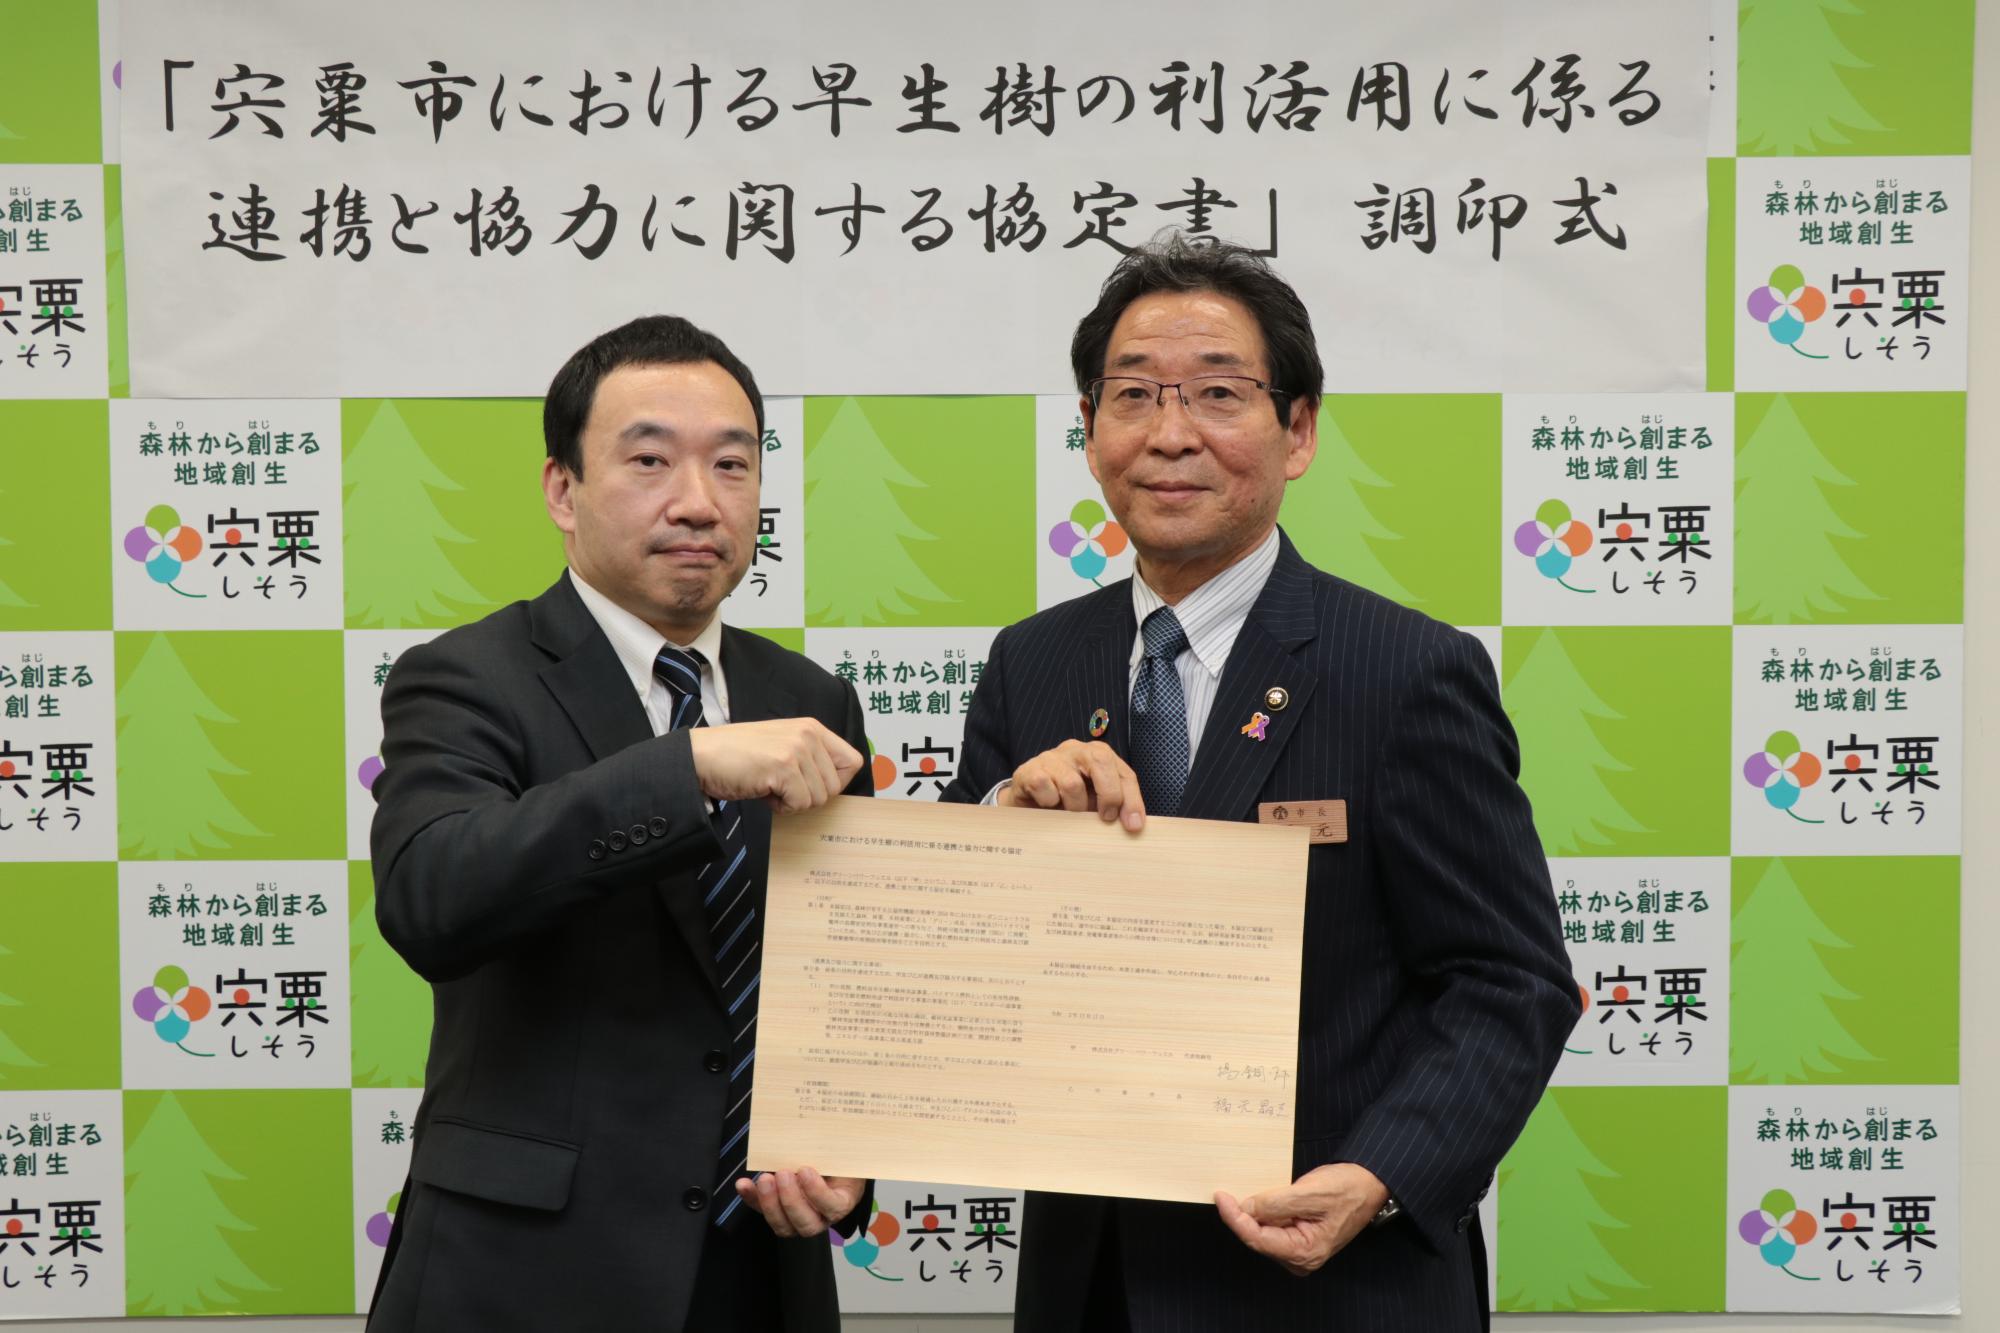 協定書を手にした、左は大阪ガス子会社の揚代表取締役、右は福元市長が並んでいる写真